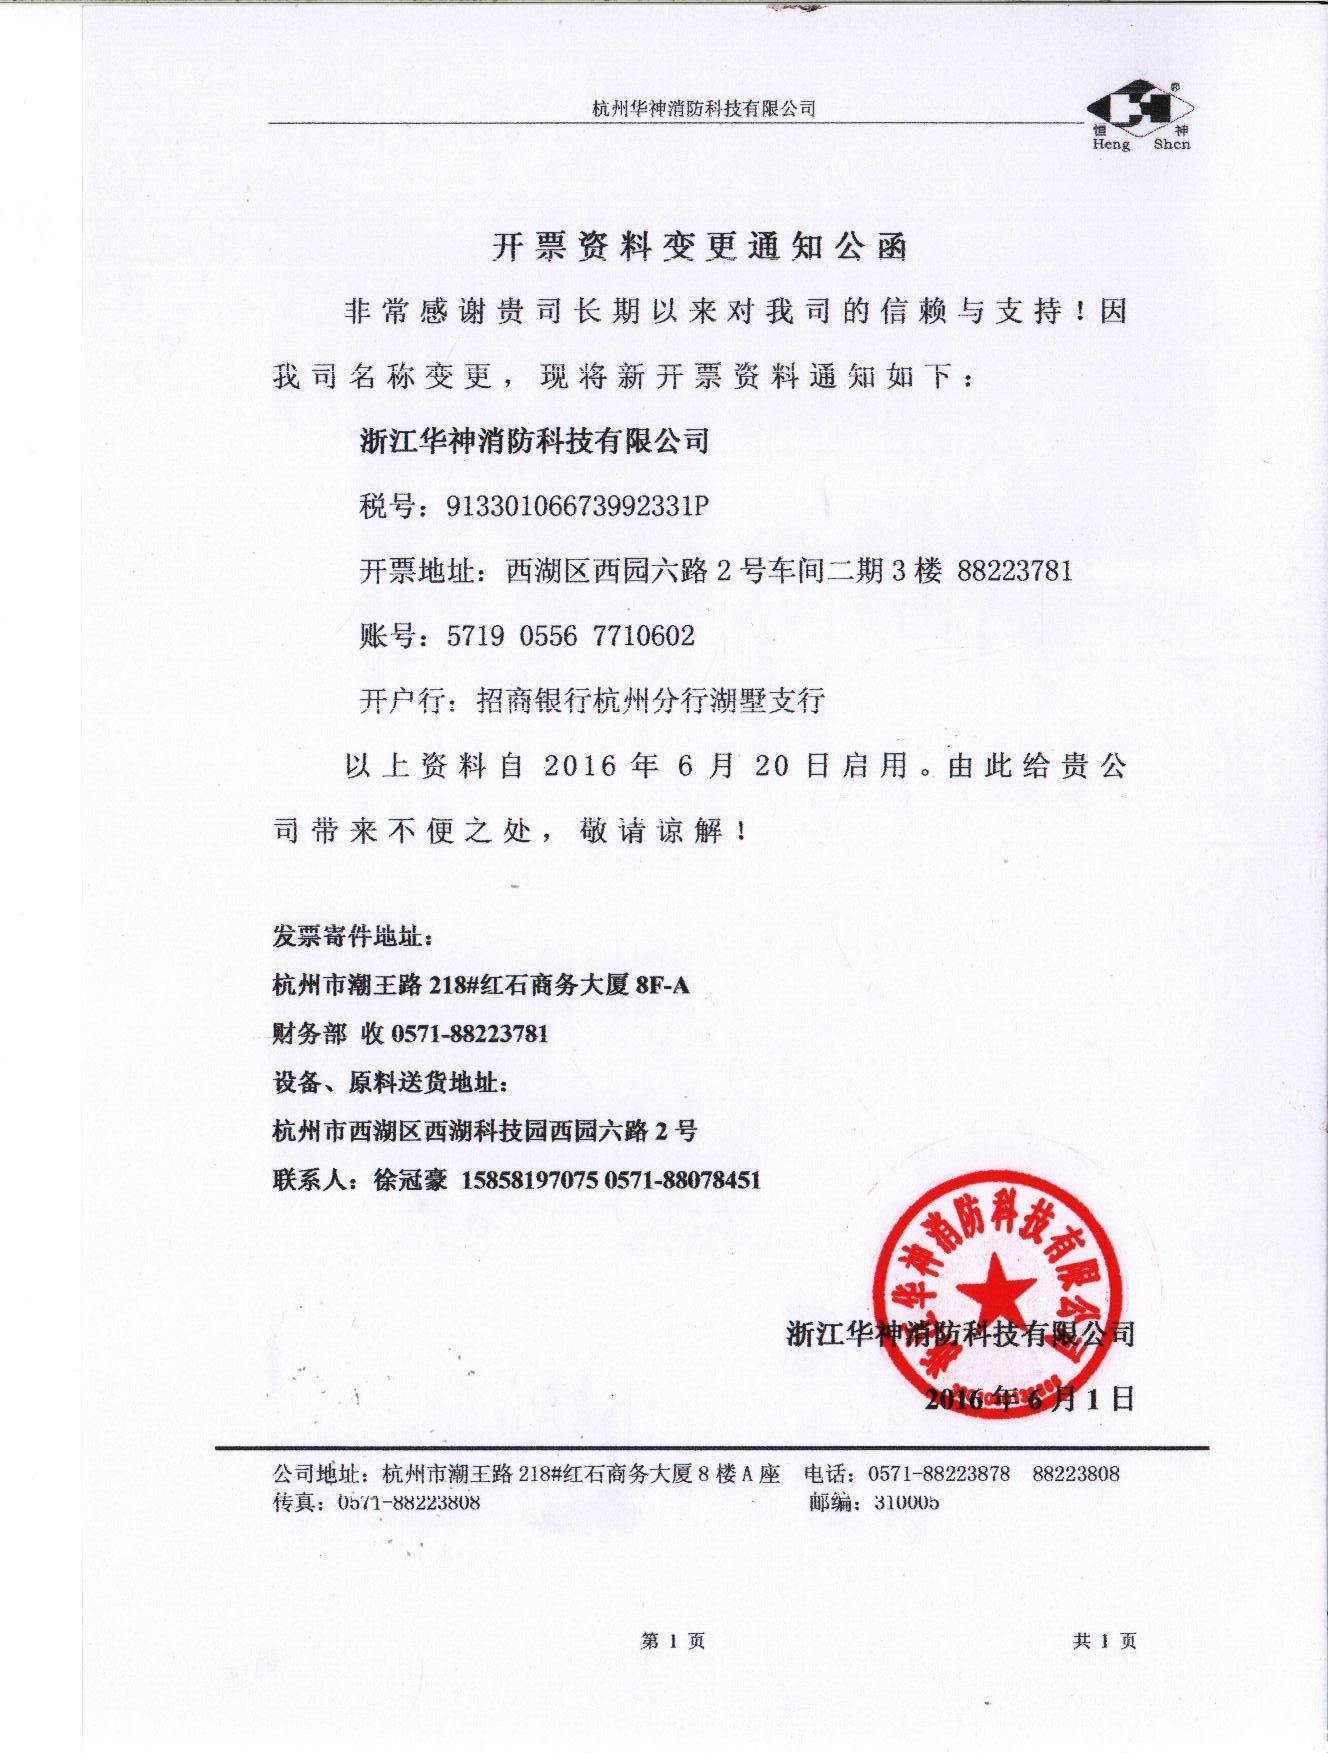 杭州华神消防科技有限公司名称变更的通知